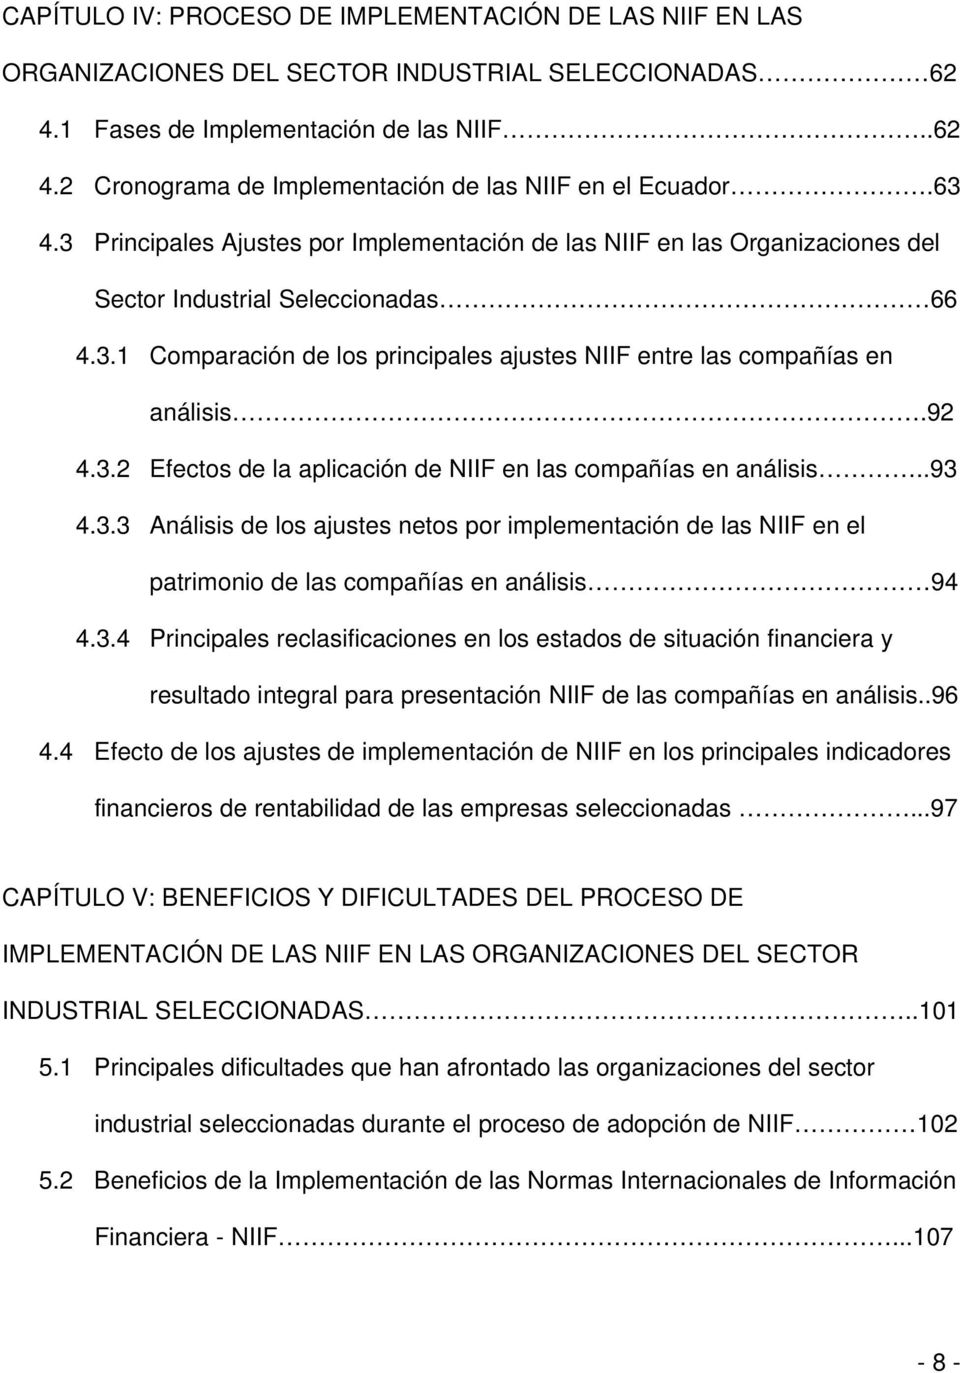 92 4.3.2 Efectos de la aplicación de NIIF en las compañías en análisis..93 4.3.3 Análisis de los ajustes netos por implementación de las NIIF en el patrimonio de las compañías en análisis 94 4.3.4 Principales reclasificaciones en los estados de situación financiera y resultado integral para presentación NIIF de las compañías en análisis.